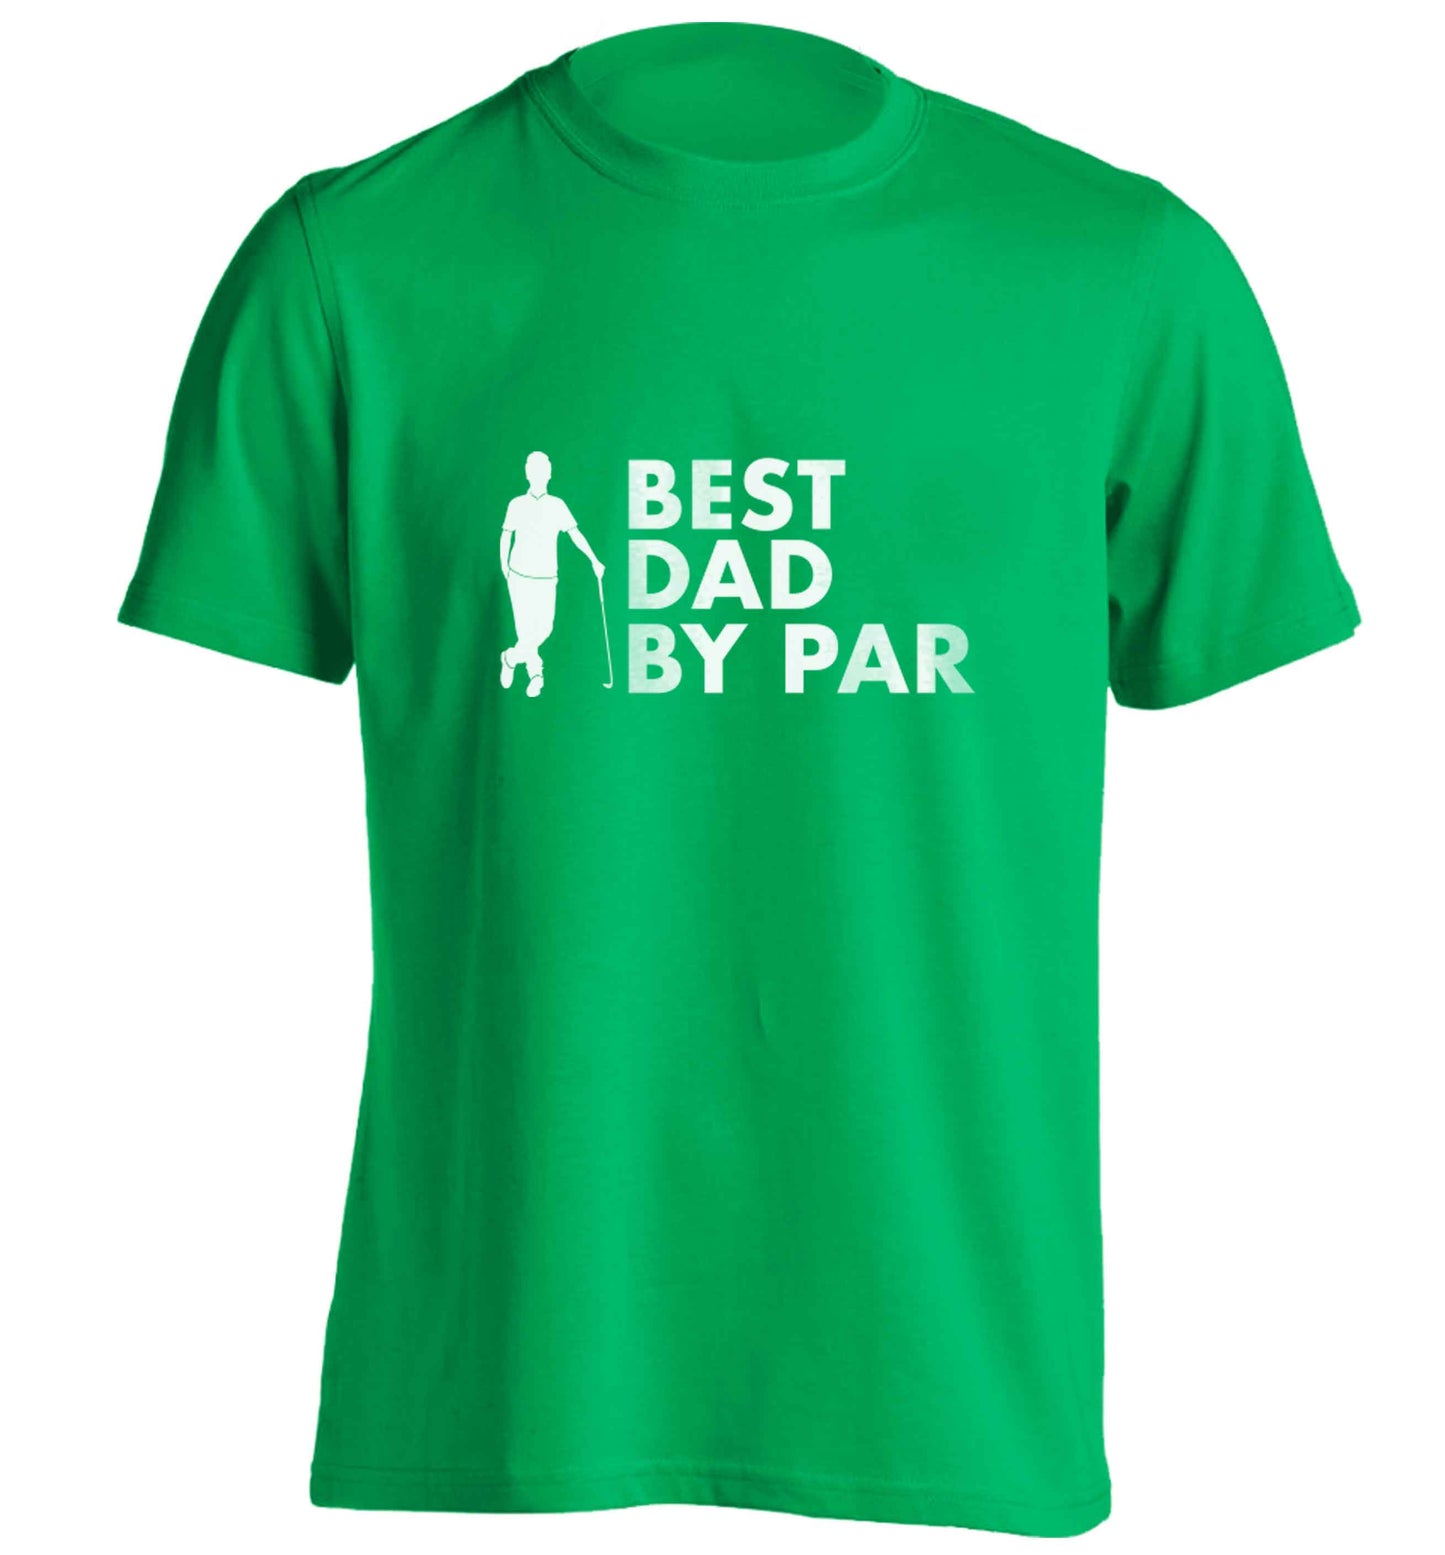 Best dad by par adults unisex green Tshirt 2XL